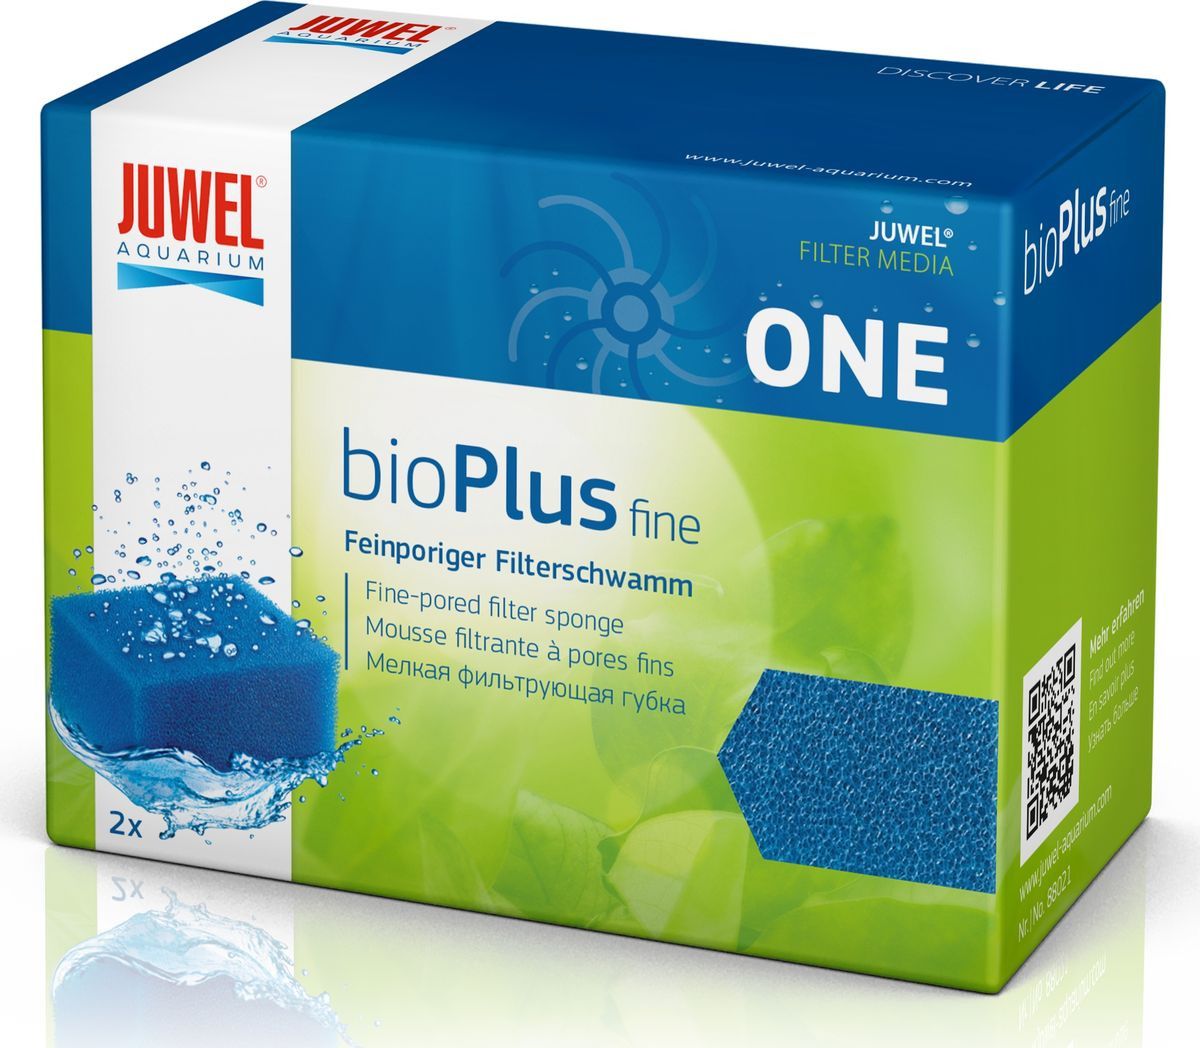    Juwel Bioplus Fine One, , 88021